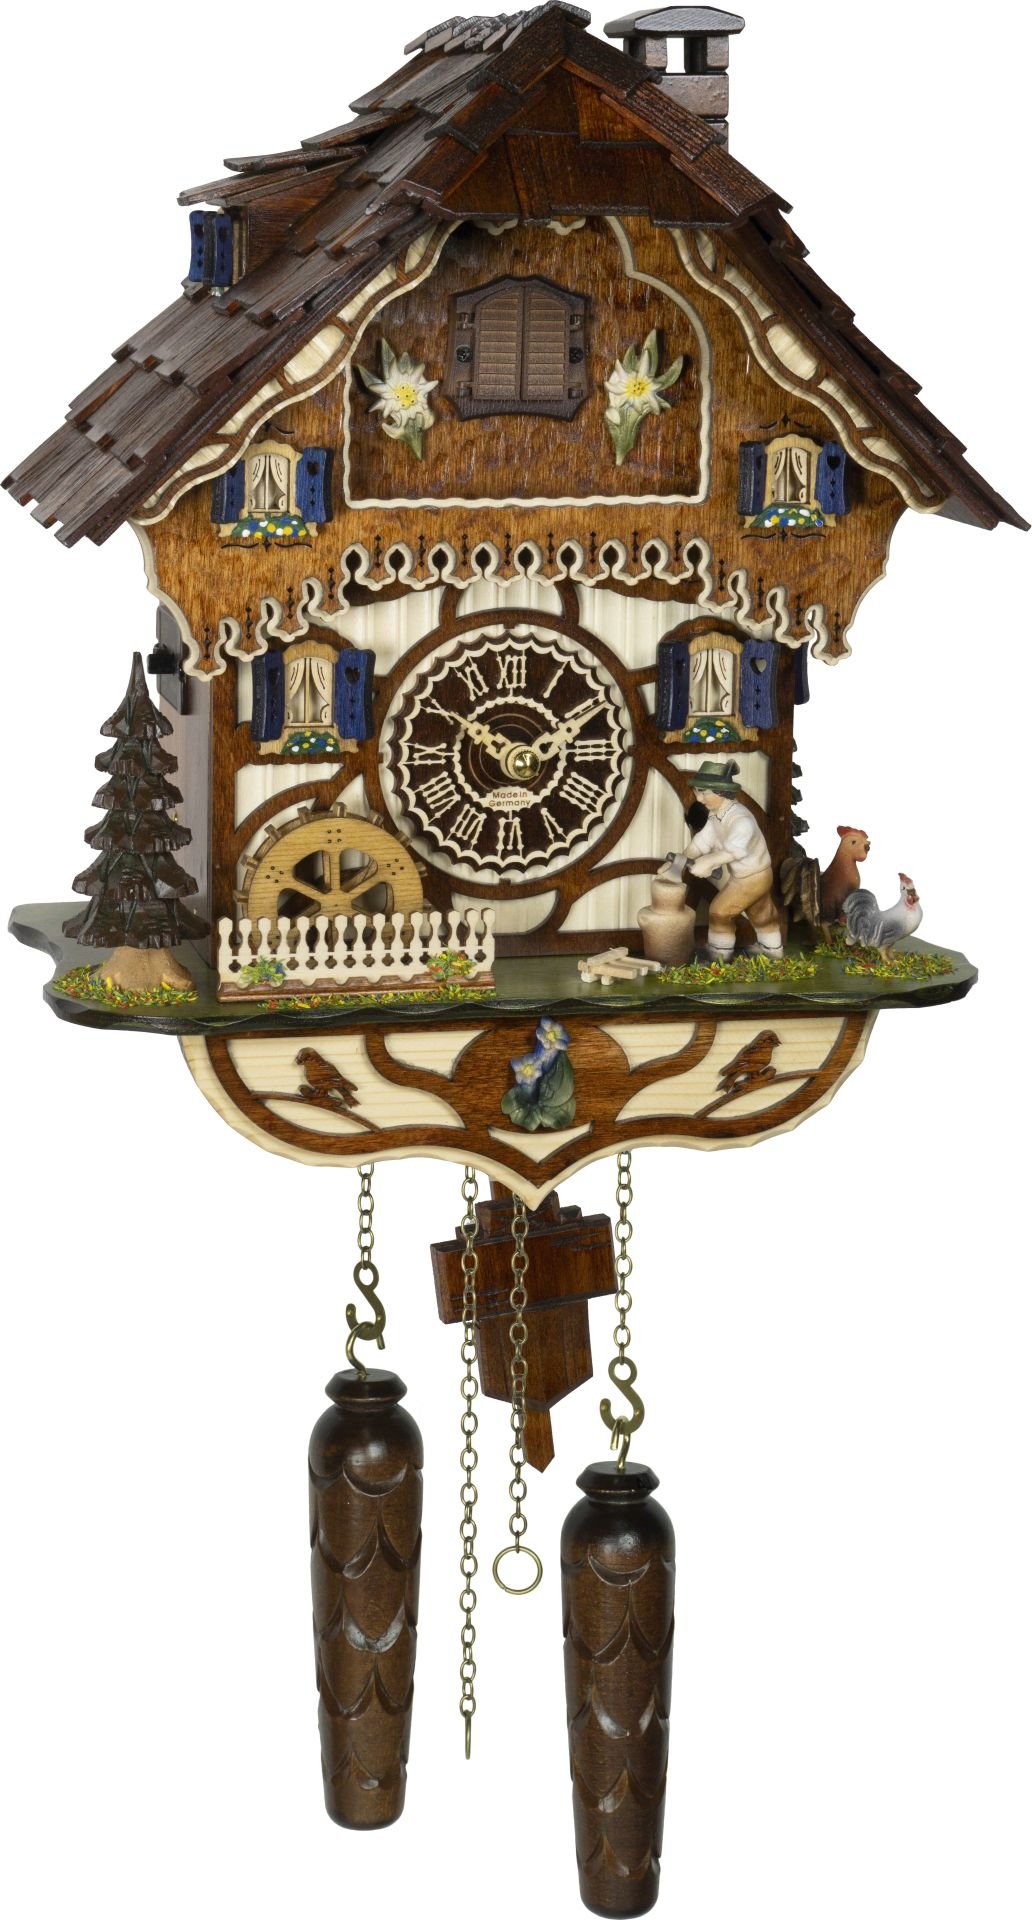 Kuckucksuhr Chalet-Stil Quarz-Uhrwerk 33cm von Trenkle Uhren